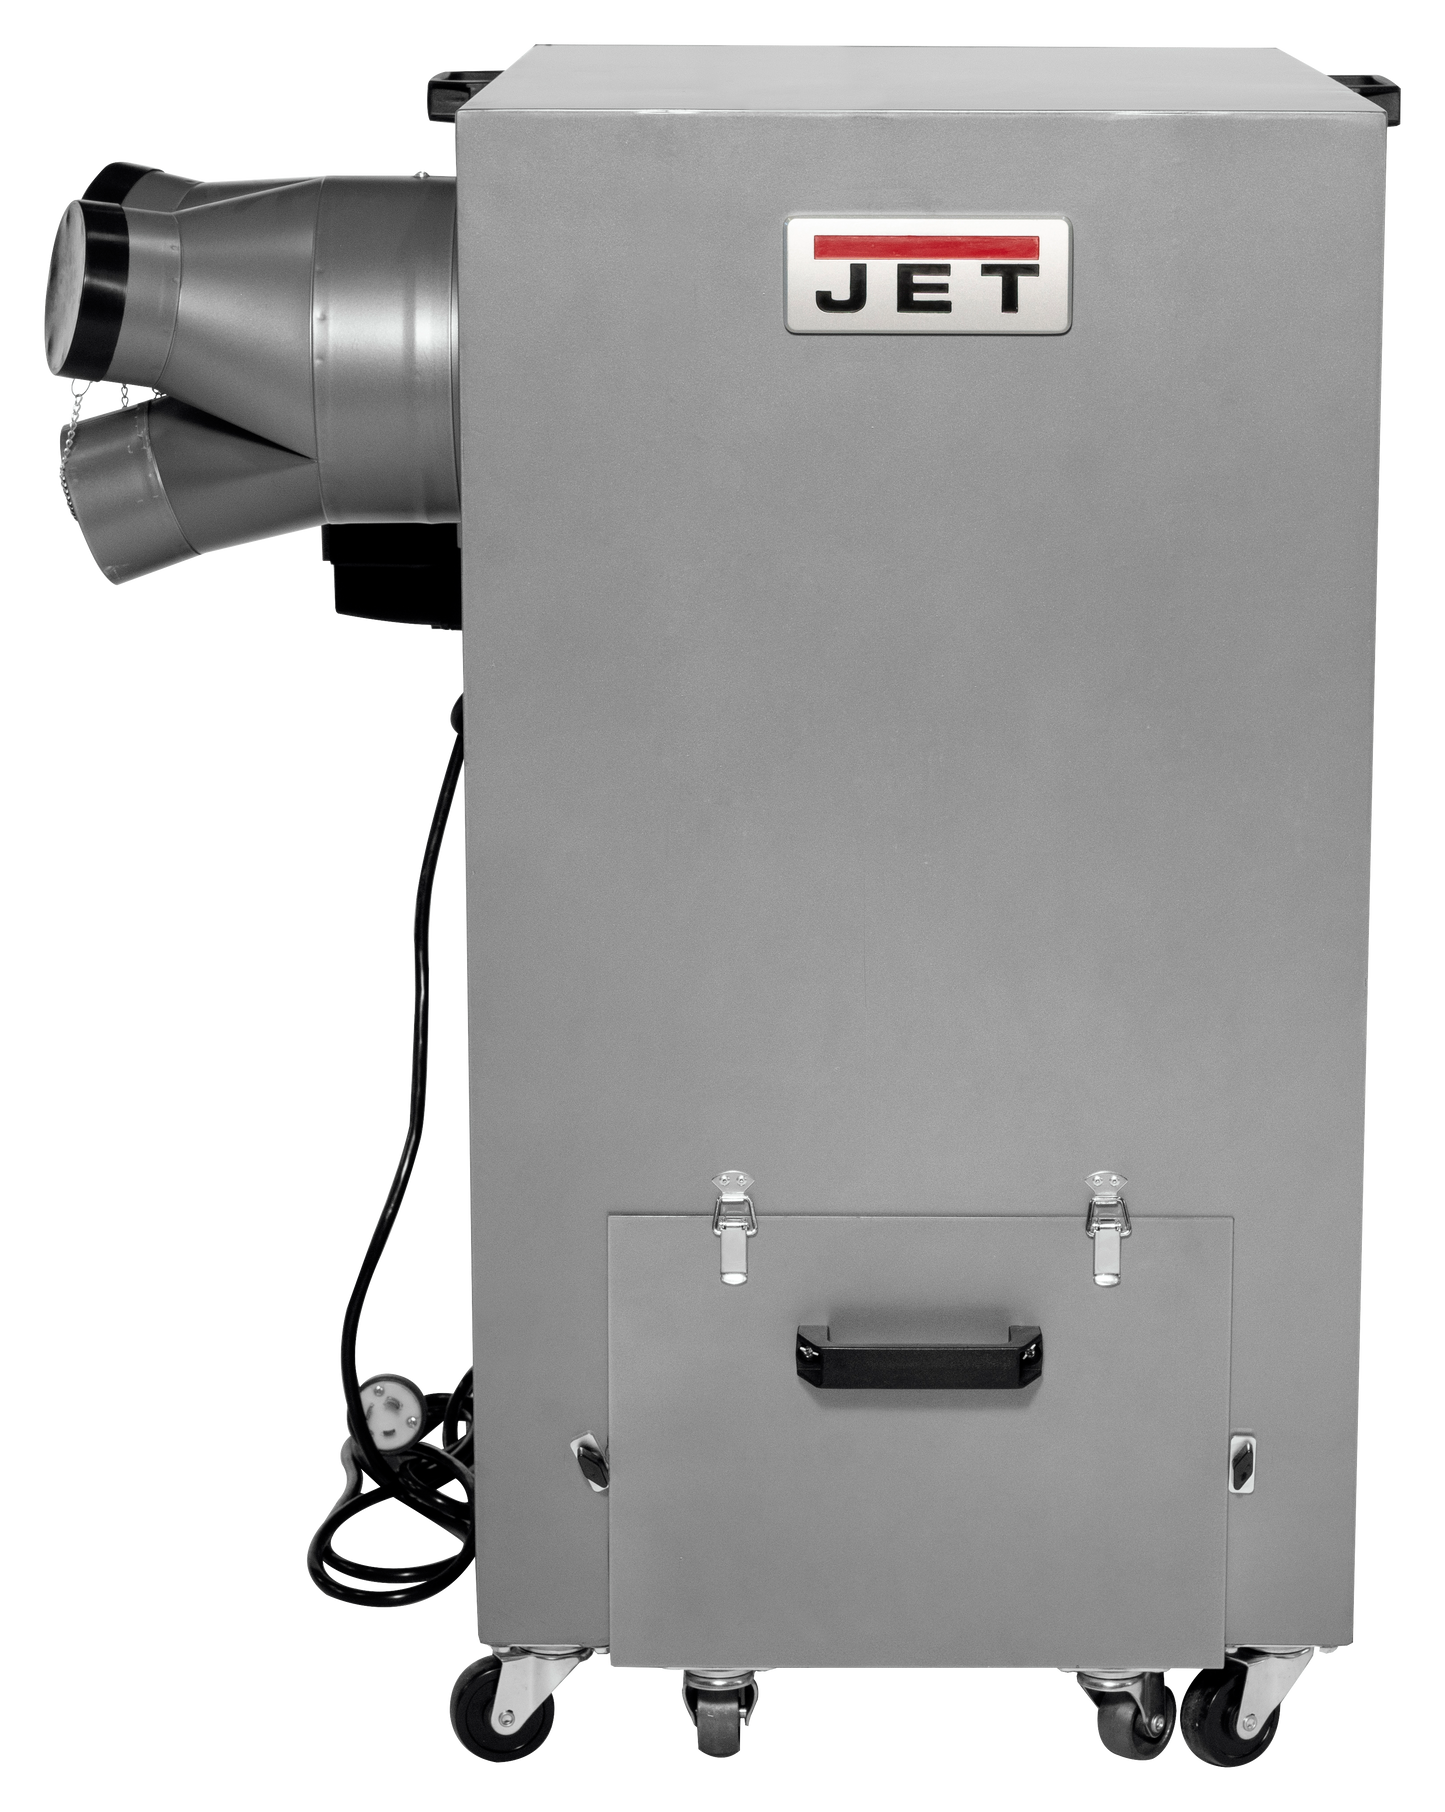 JDC-510 JET  1500 CFM Industrial Dust Collector  3HP, 220V., 3Phase